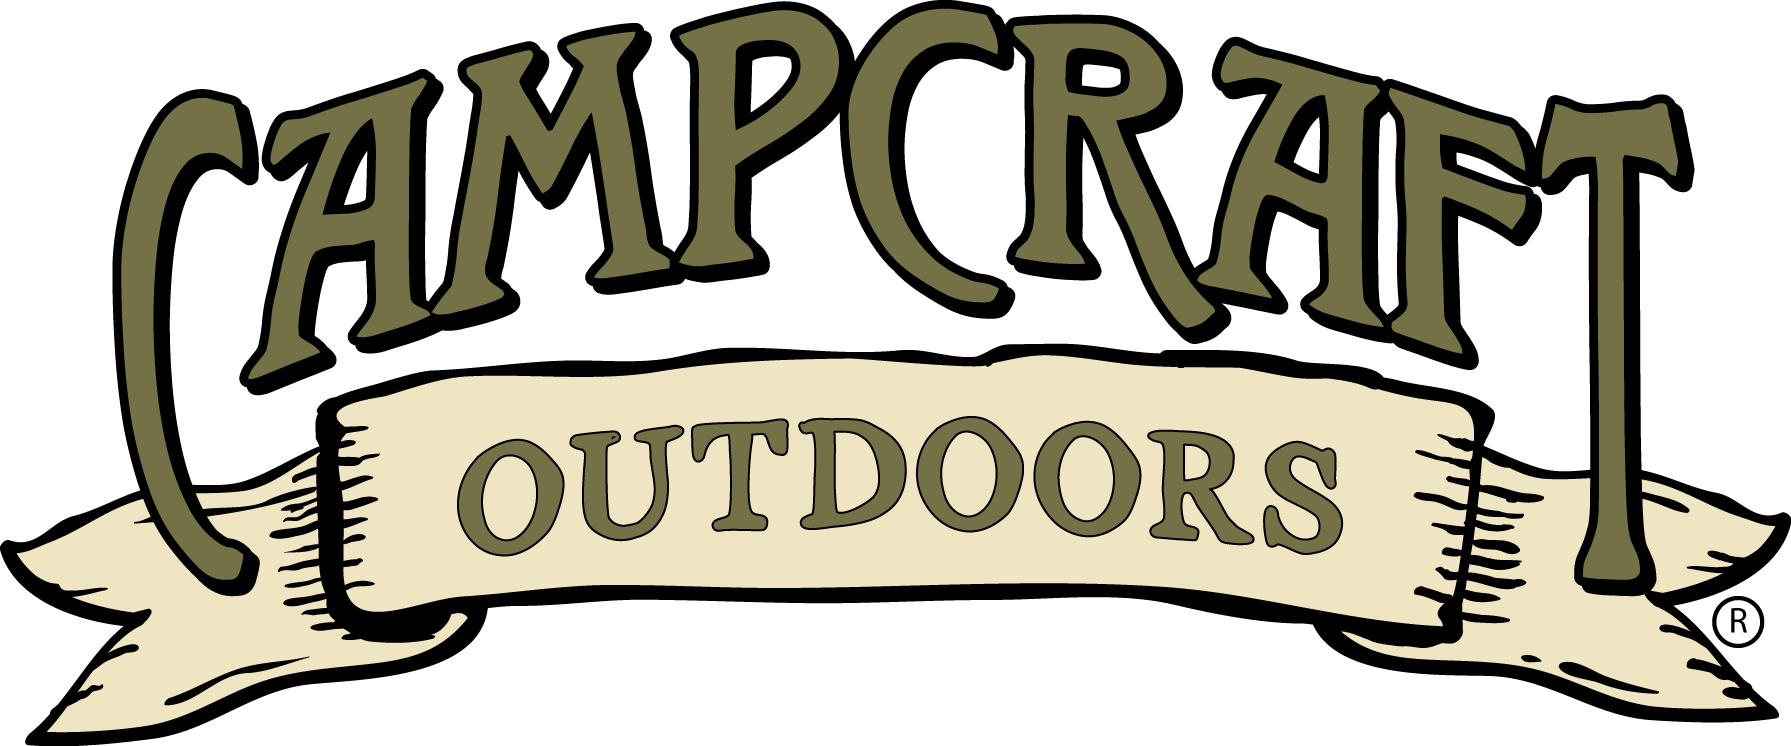 Camp Craft Outdoors Logo PNG